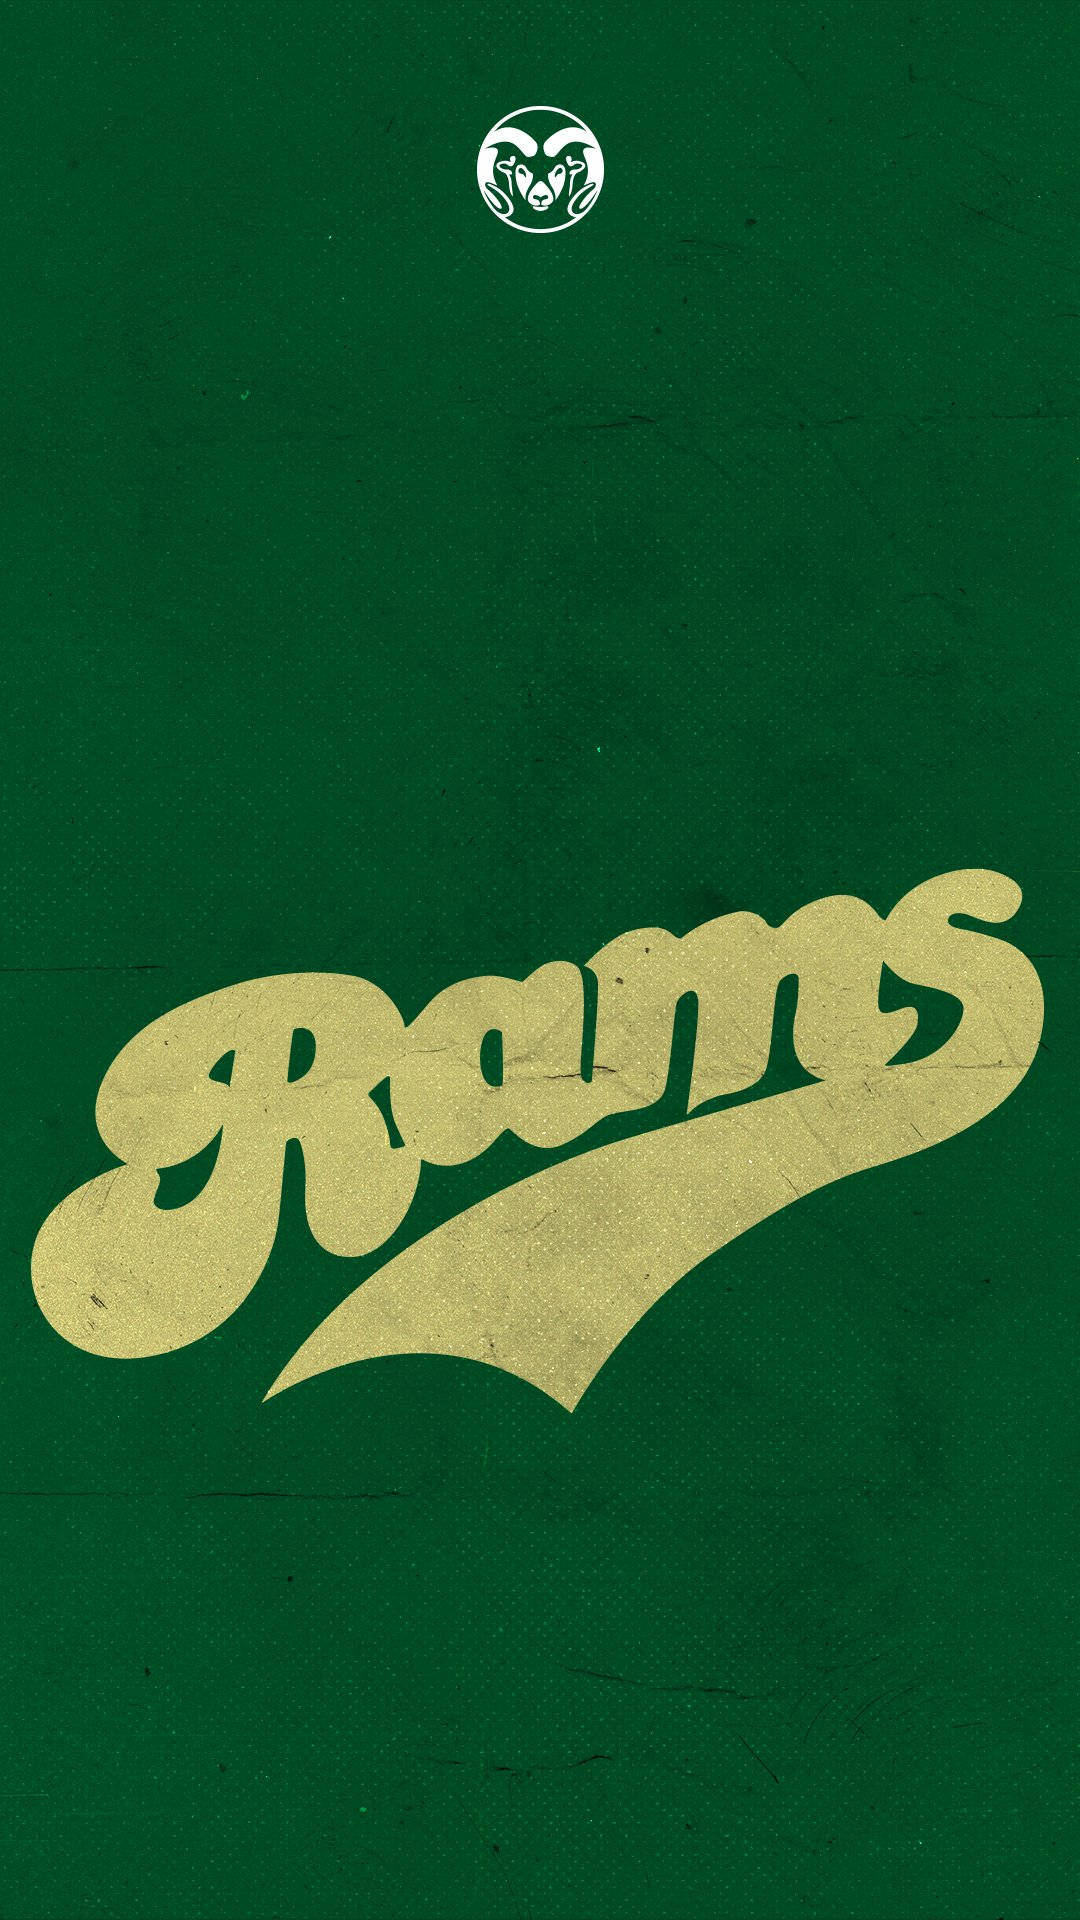 Coloradostate University Rams Logo Verde Fondo de pantalla